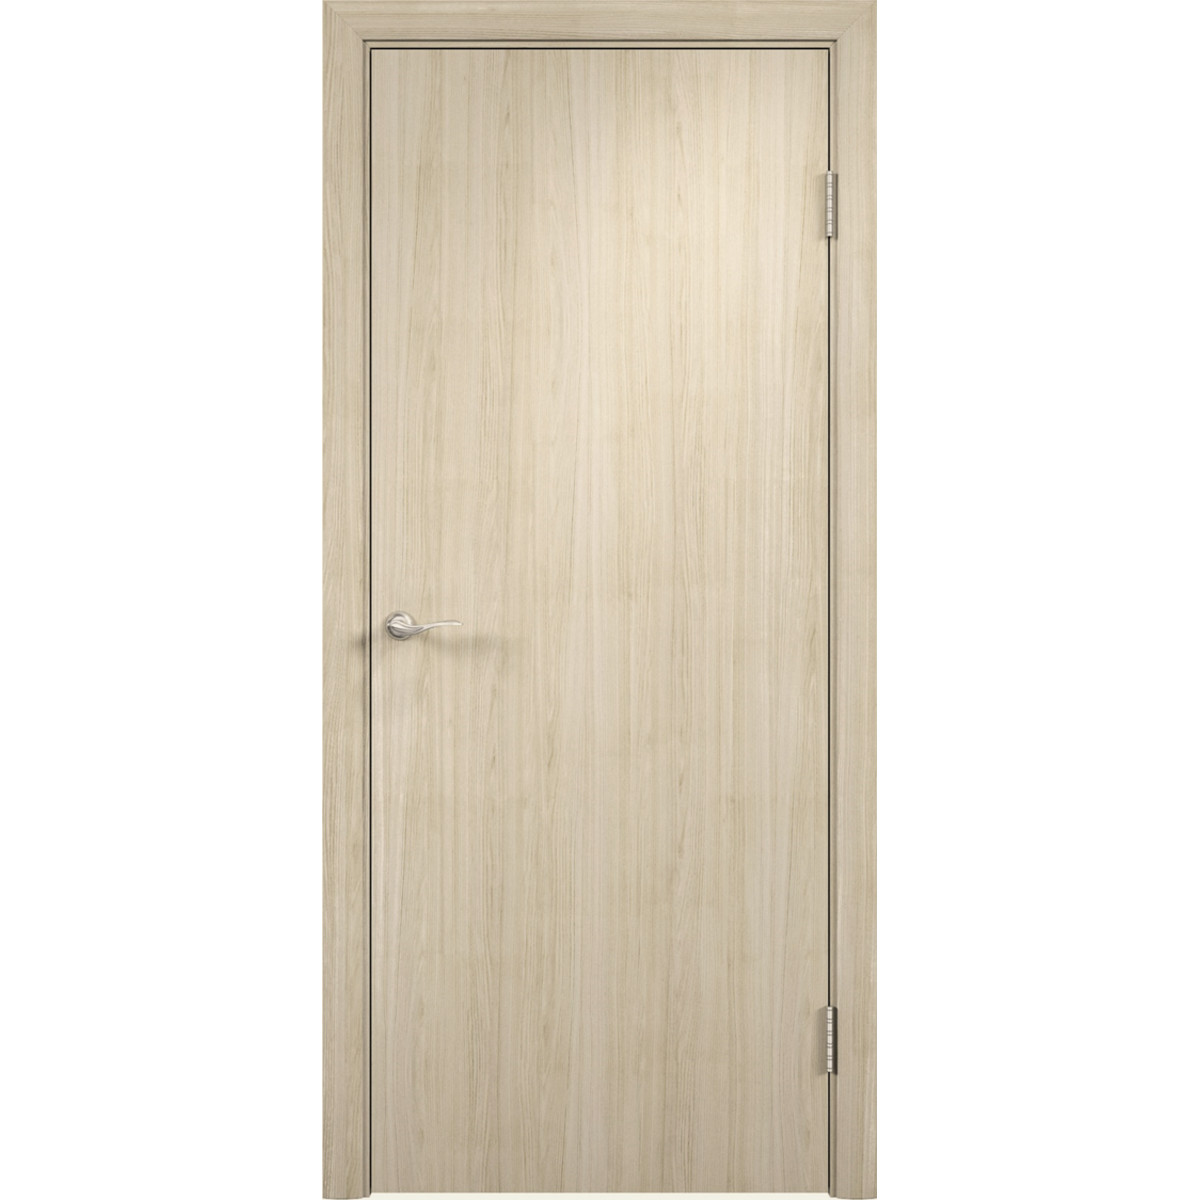 Блок дверной глухой Verda 67x204 см, ламинация, цвет дуб кремовый, с фурнитурой